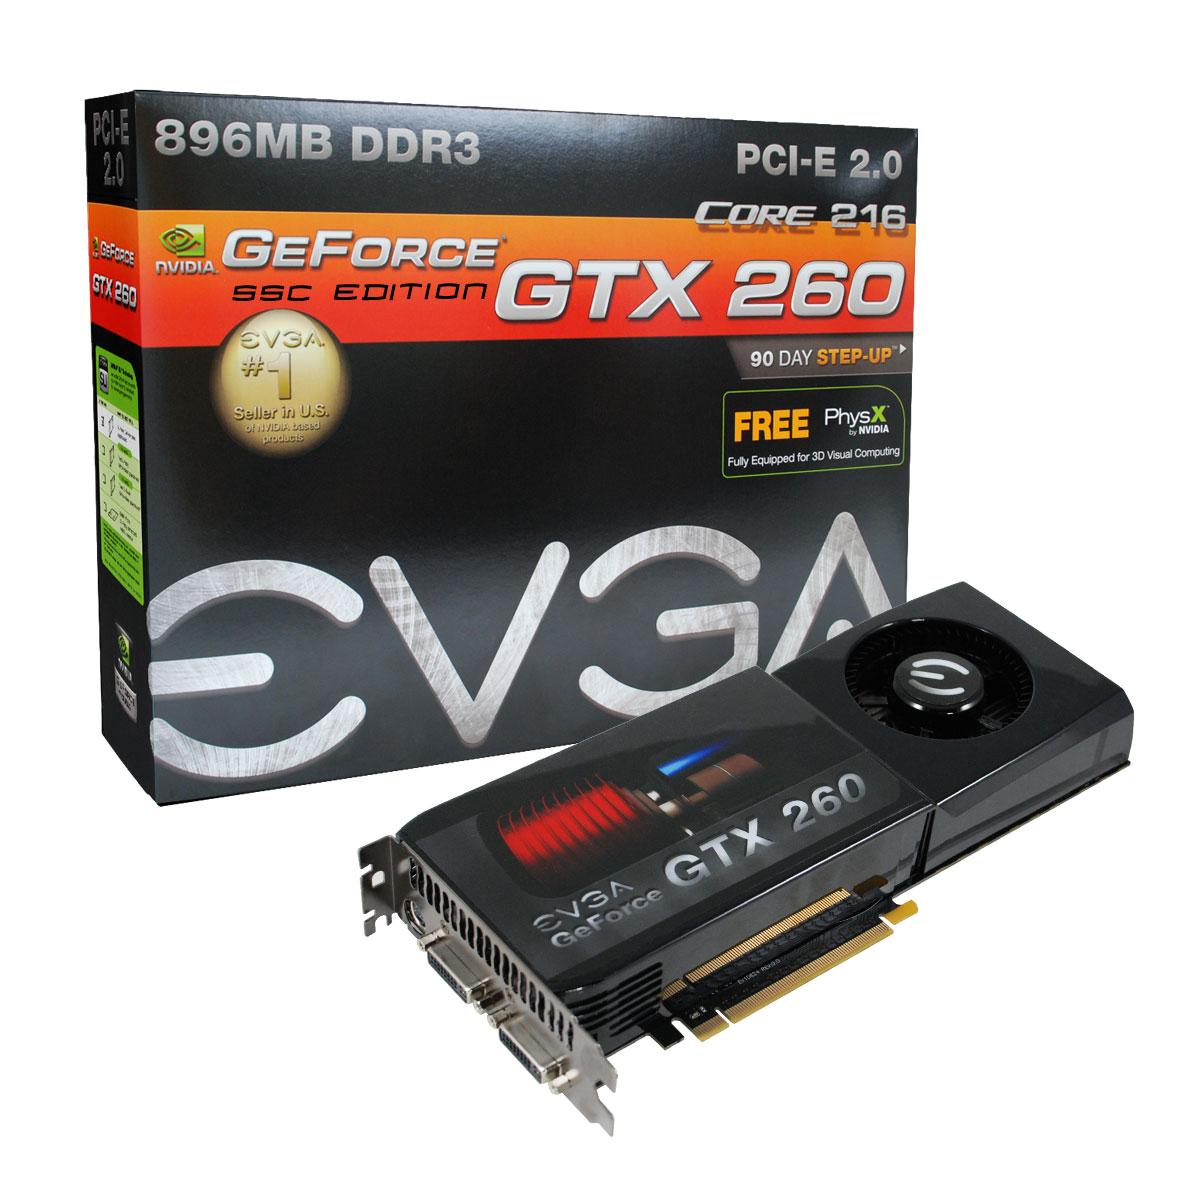 Immagine pubblicata in relazione al seguente contenuto: EVGA commercializza tre GeForce GTX 260 con gpu a 55nm | Nome immagine: news9300_1.jpg